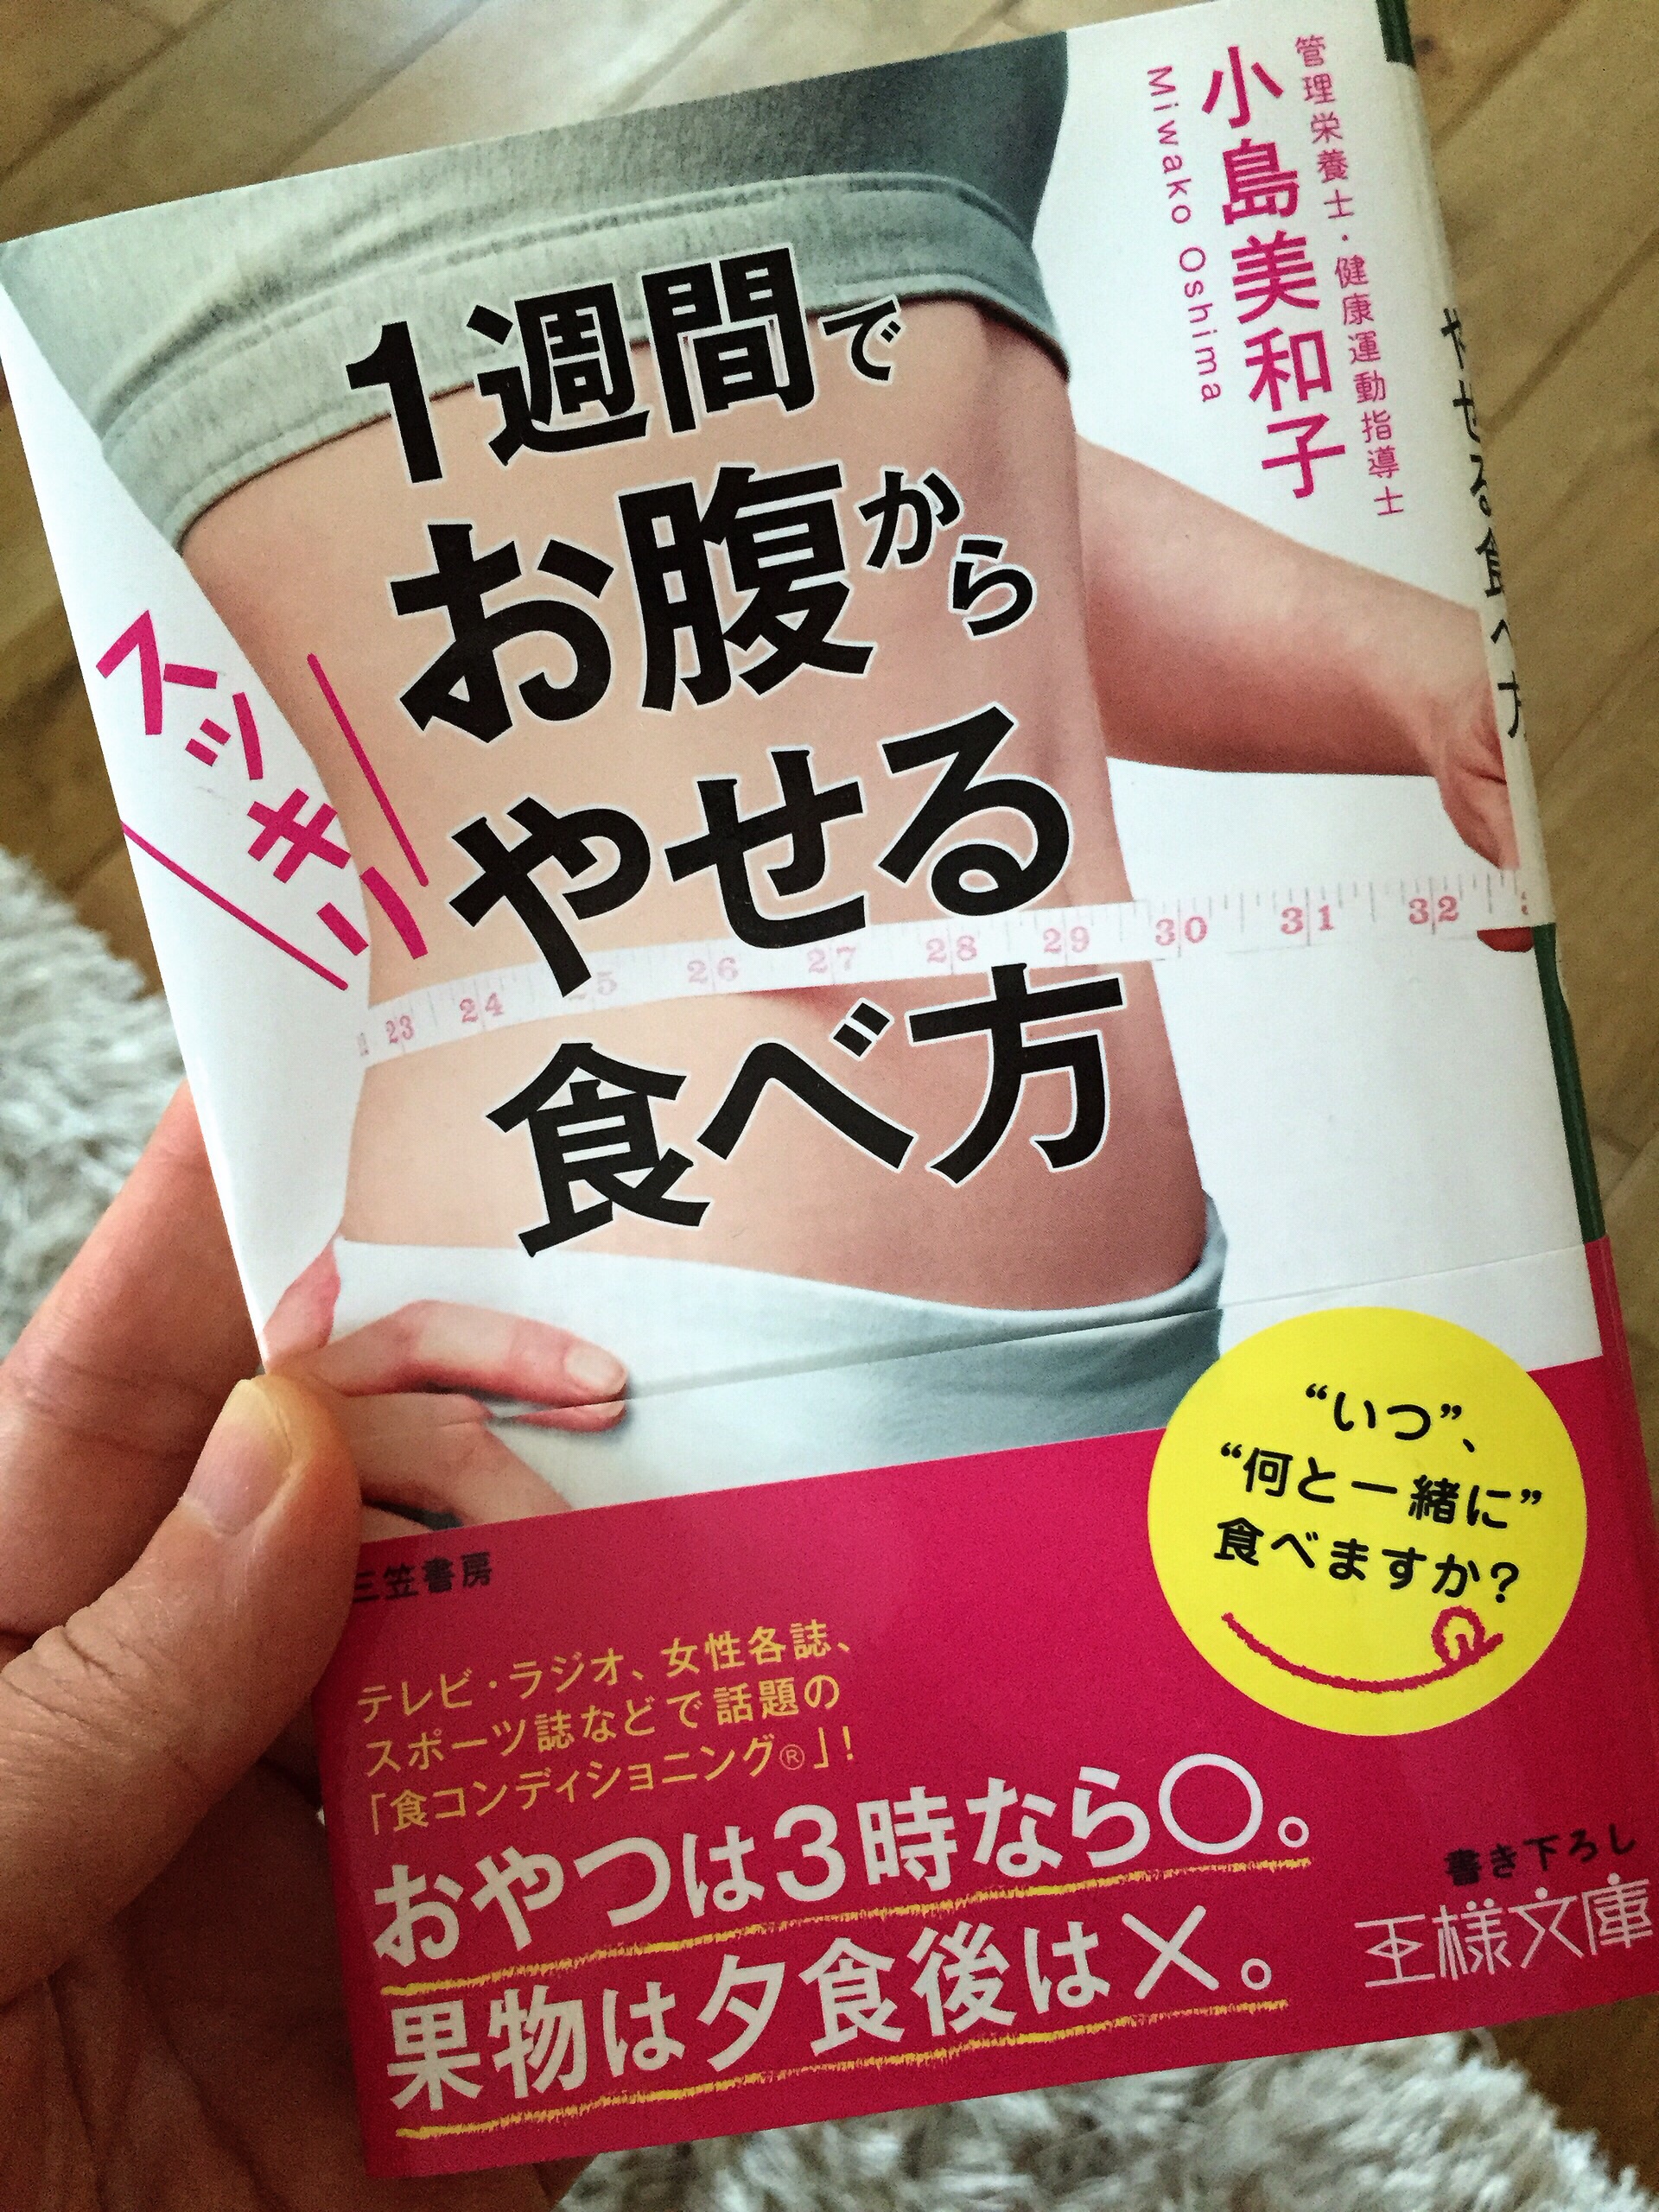 小島美和子先生の『1週間でお腹からやせる食べ方』はAmazonで購入できますよ。